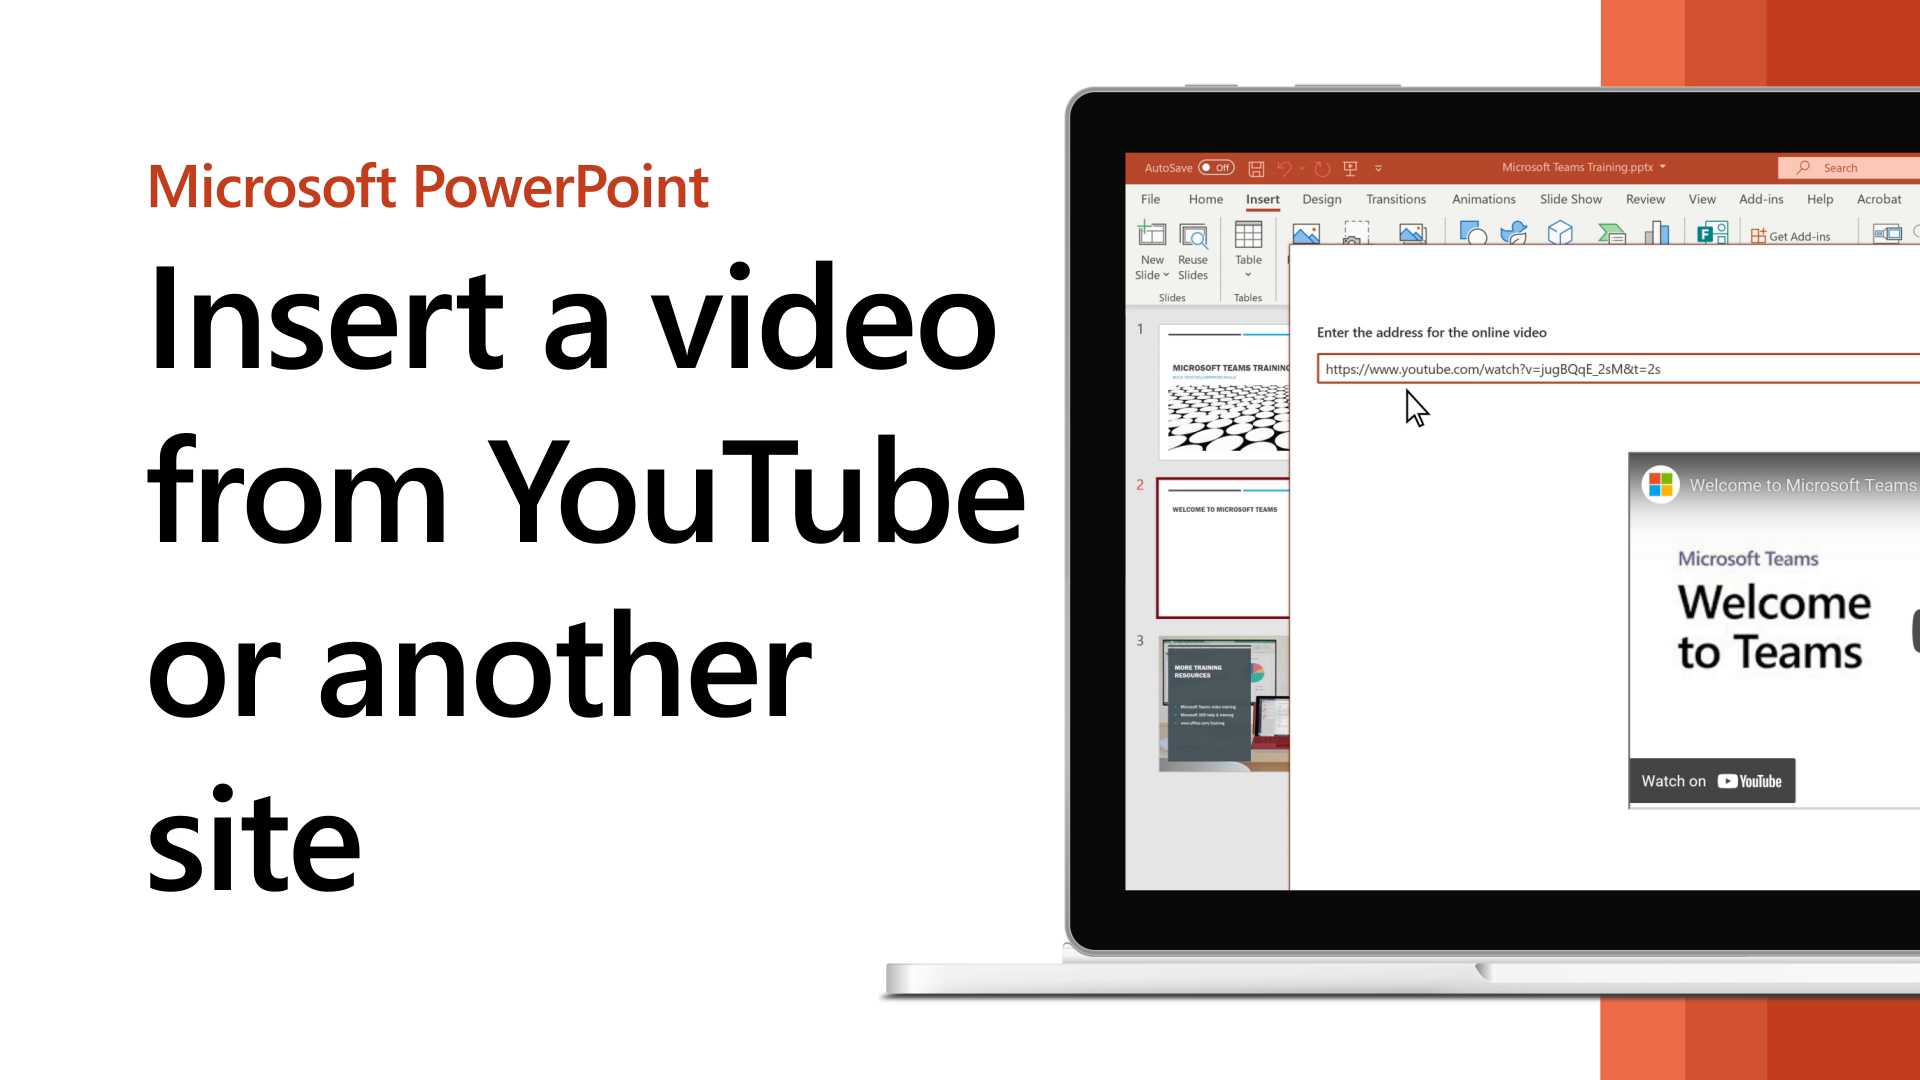 Chèn video, Microsoft - Với tính năng chèn video của Microsoft, bạn có thể dễ dàng thêm video vào bài thuyết trình hoặc tài liệu của mình. Điều này sẽ giúp tài liệu của bạn trở nên sinh động và hấp dẫn hơn, đồng thời tăng tính tương tác và hiệu quả.